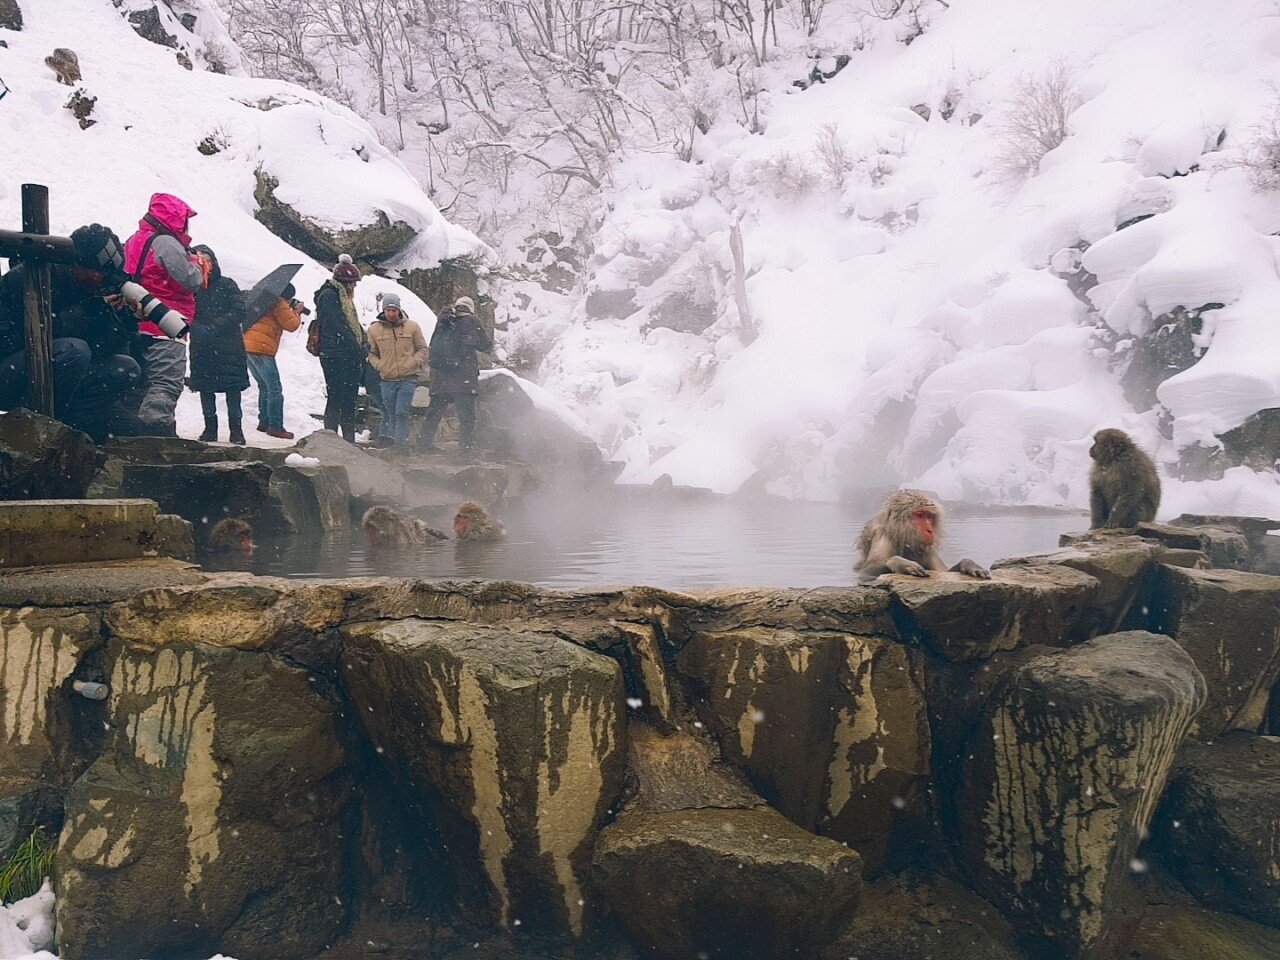 O2Cam_20190131140643.jpg 눈으로 덮인 겨울 니가타&나가노 여행기(2) (스압?)